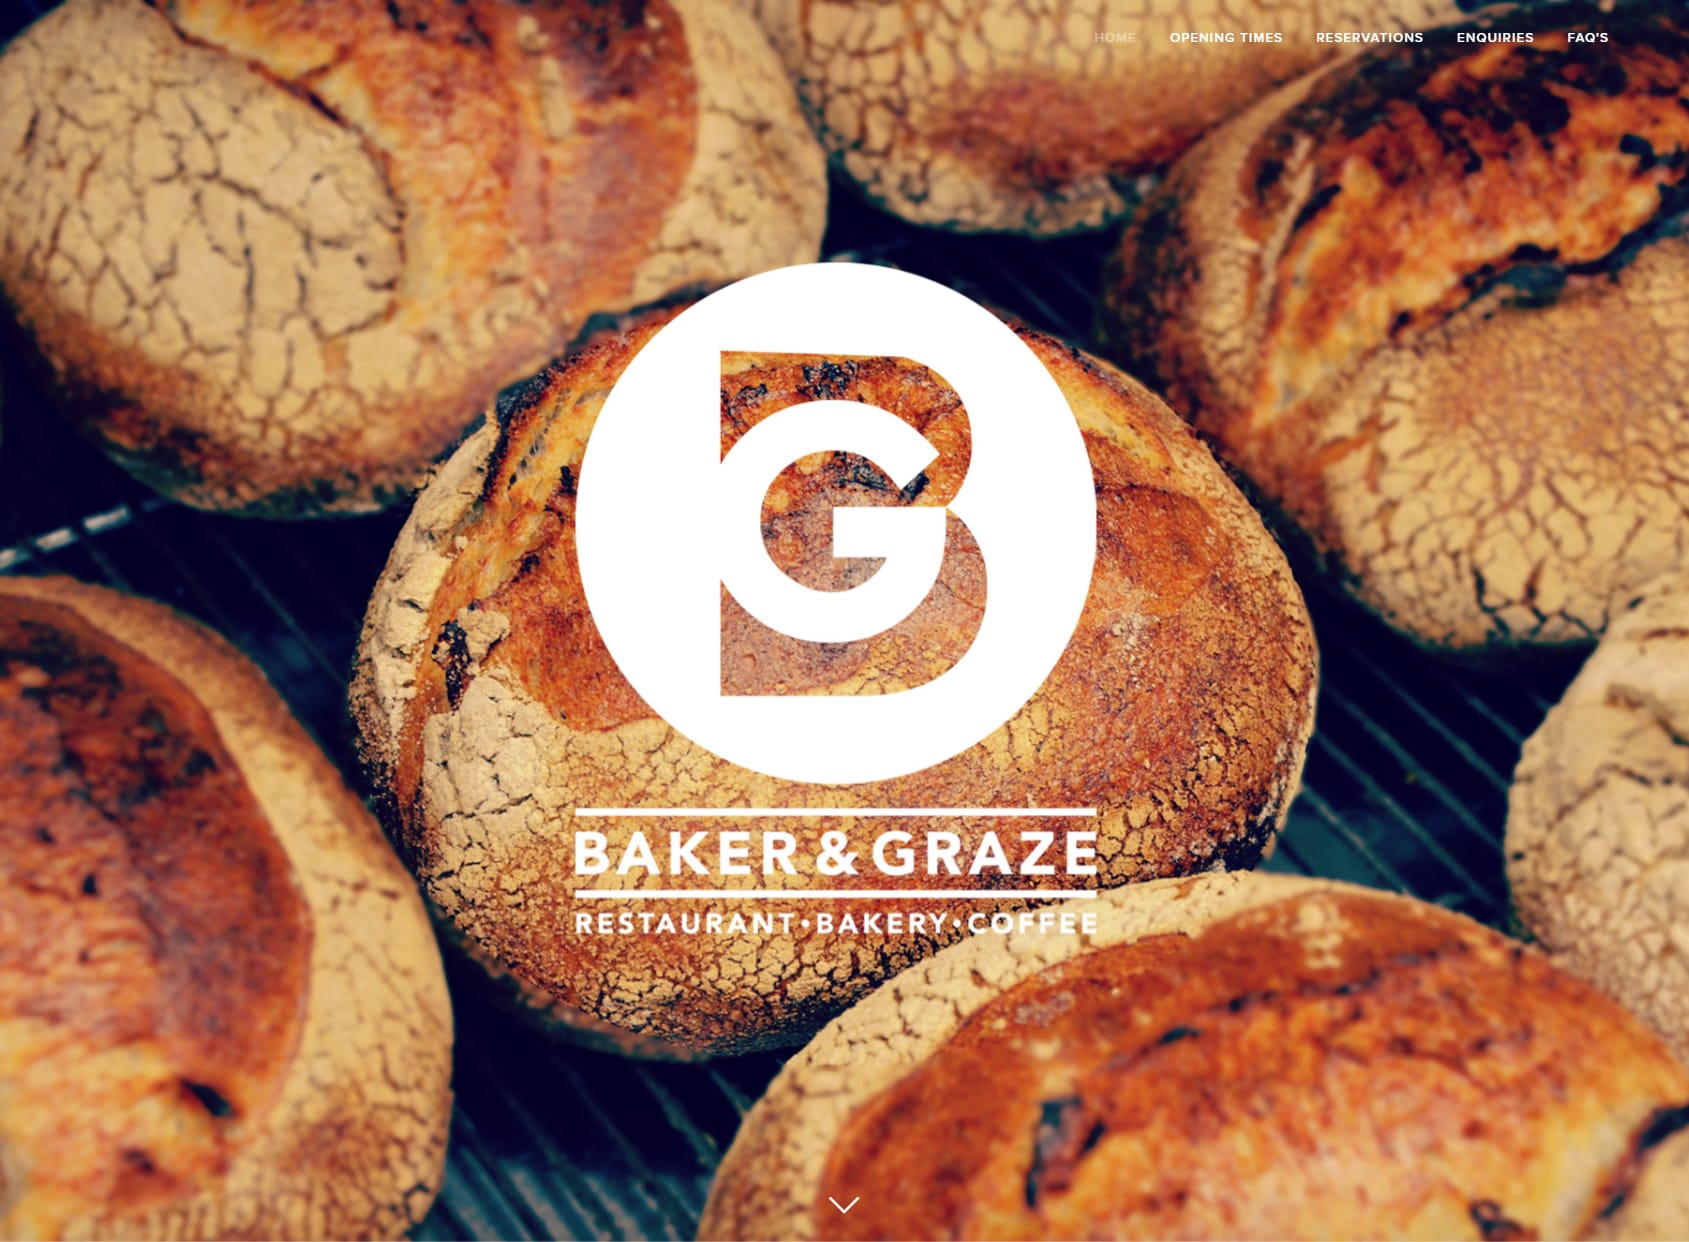 Baker & Graze